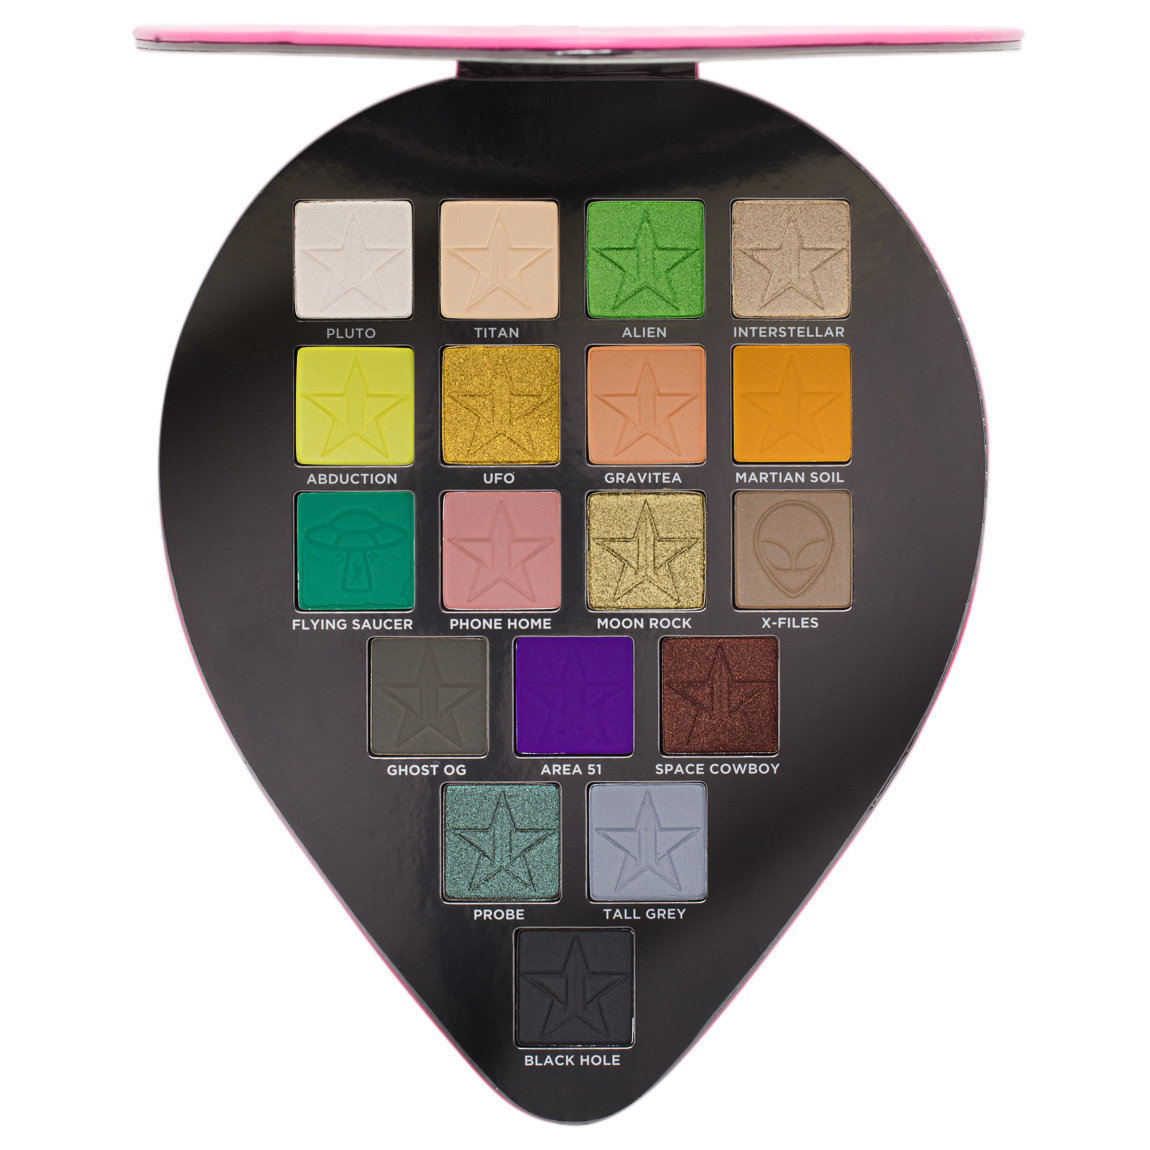 Jeffree Star Cosmetics Alien Eyeshadow Palette | Beautylish1150 x 1150